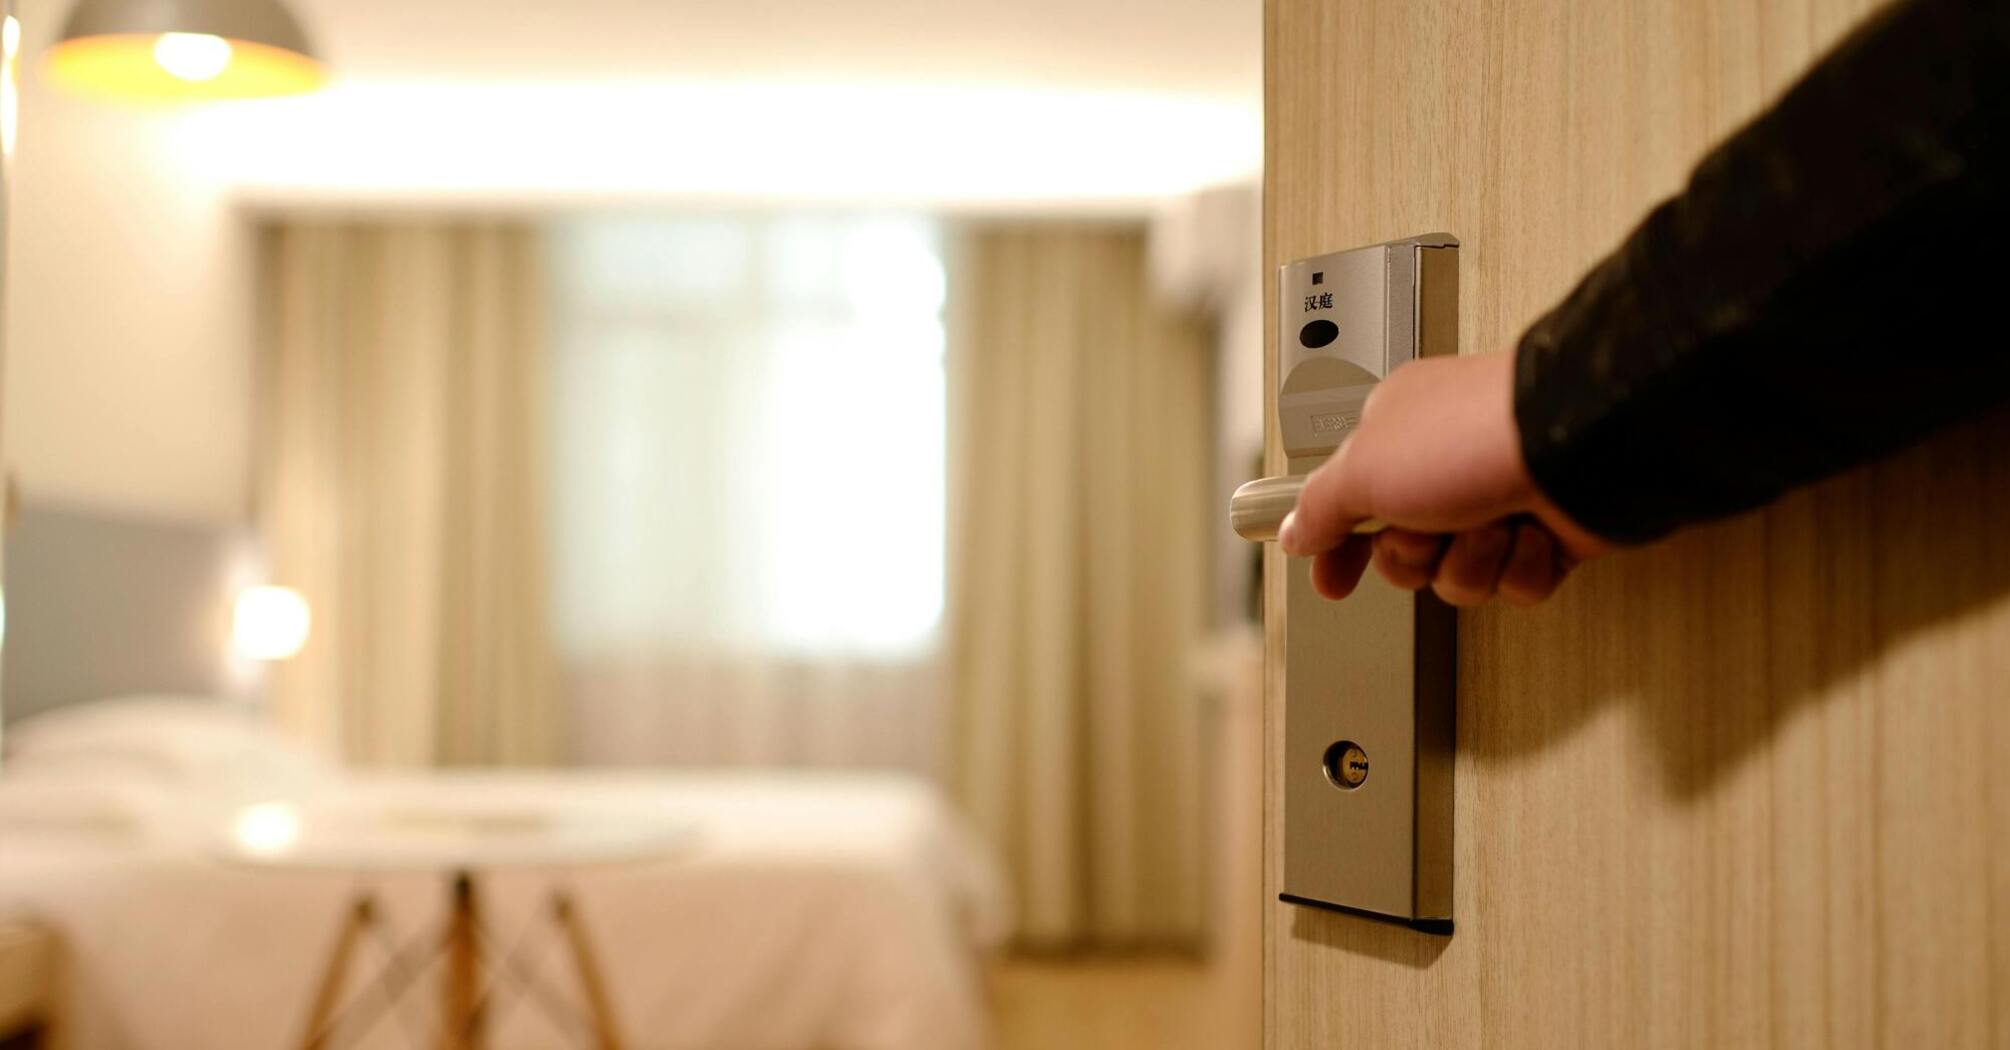 Opening the door to the hotel room